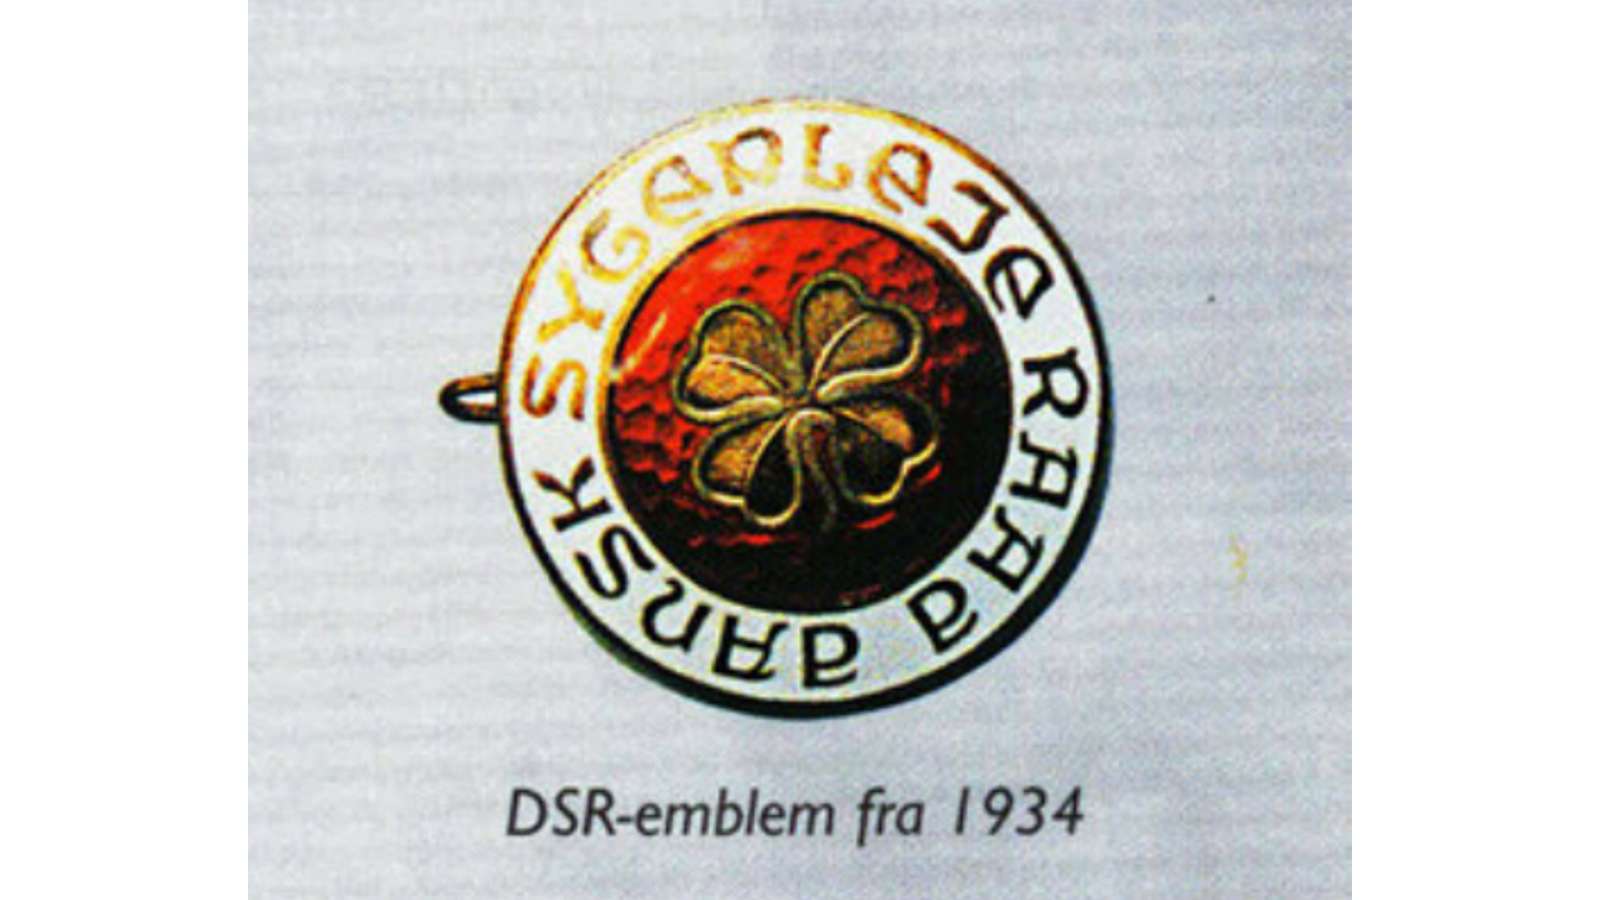 DSR-emblem fra 1934